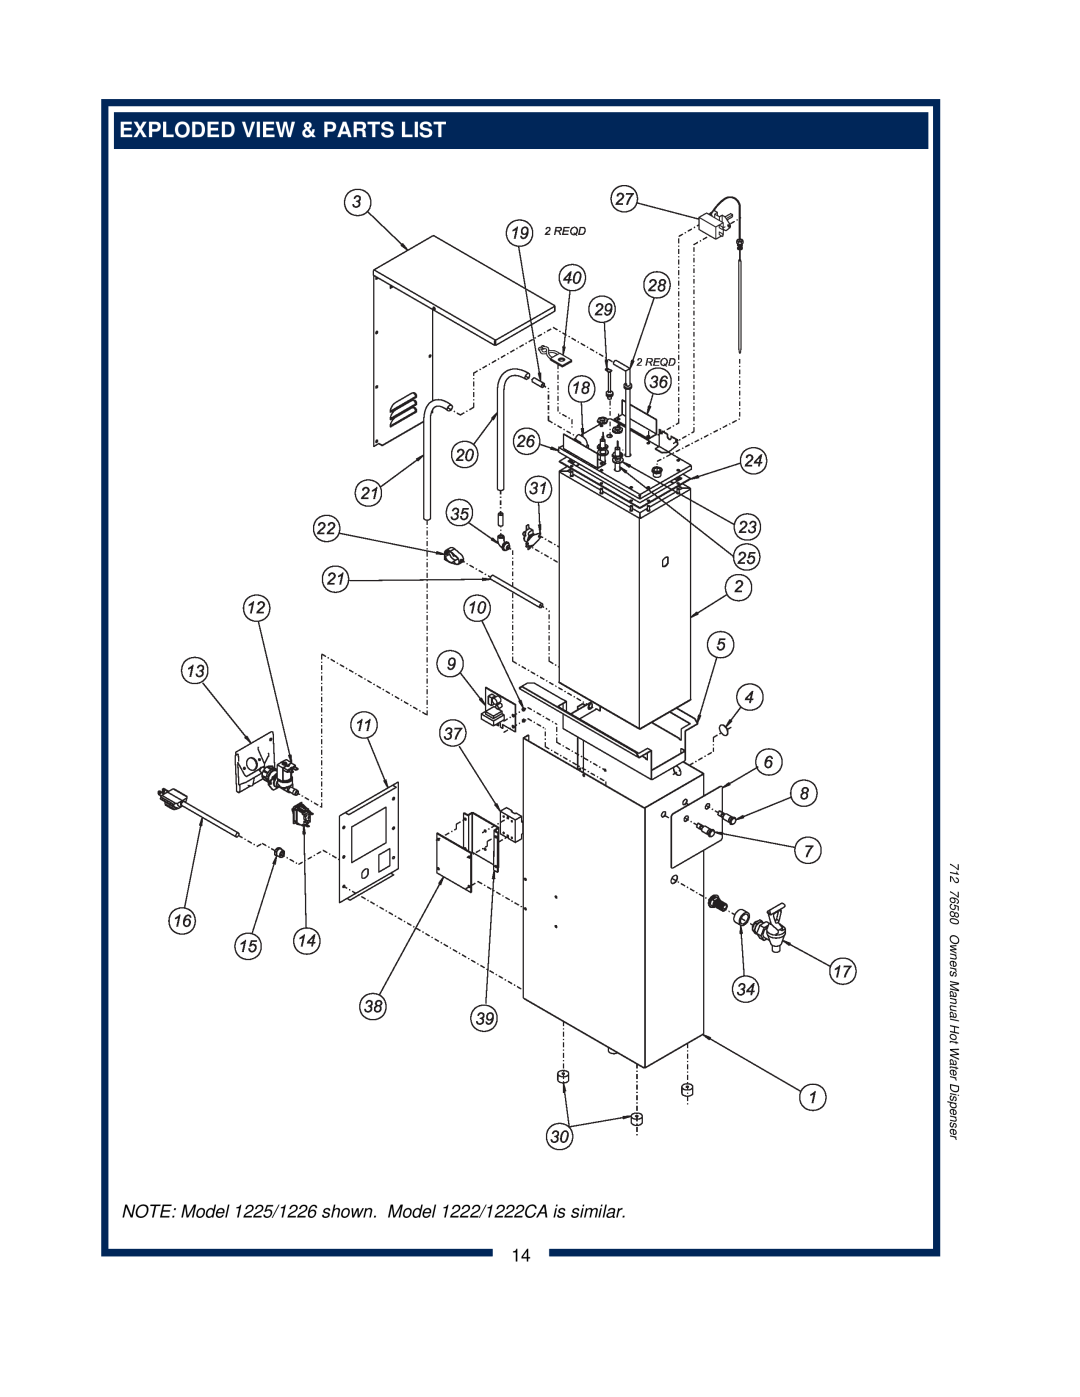 Wells 1222 1222CA owner manual NOTE Model 1225/1226 shown. Model 1222/1222CA is similar, 19 2 REQD, Reqd 